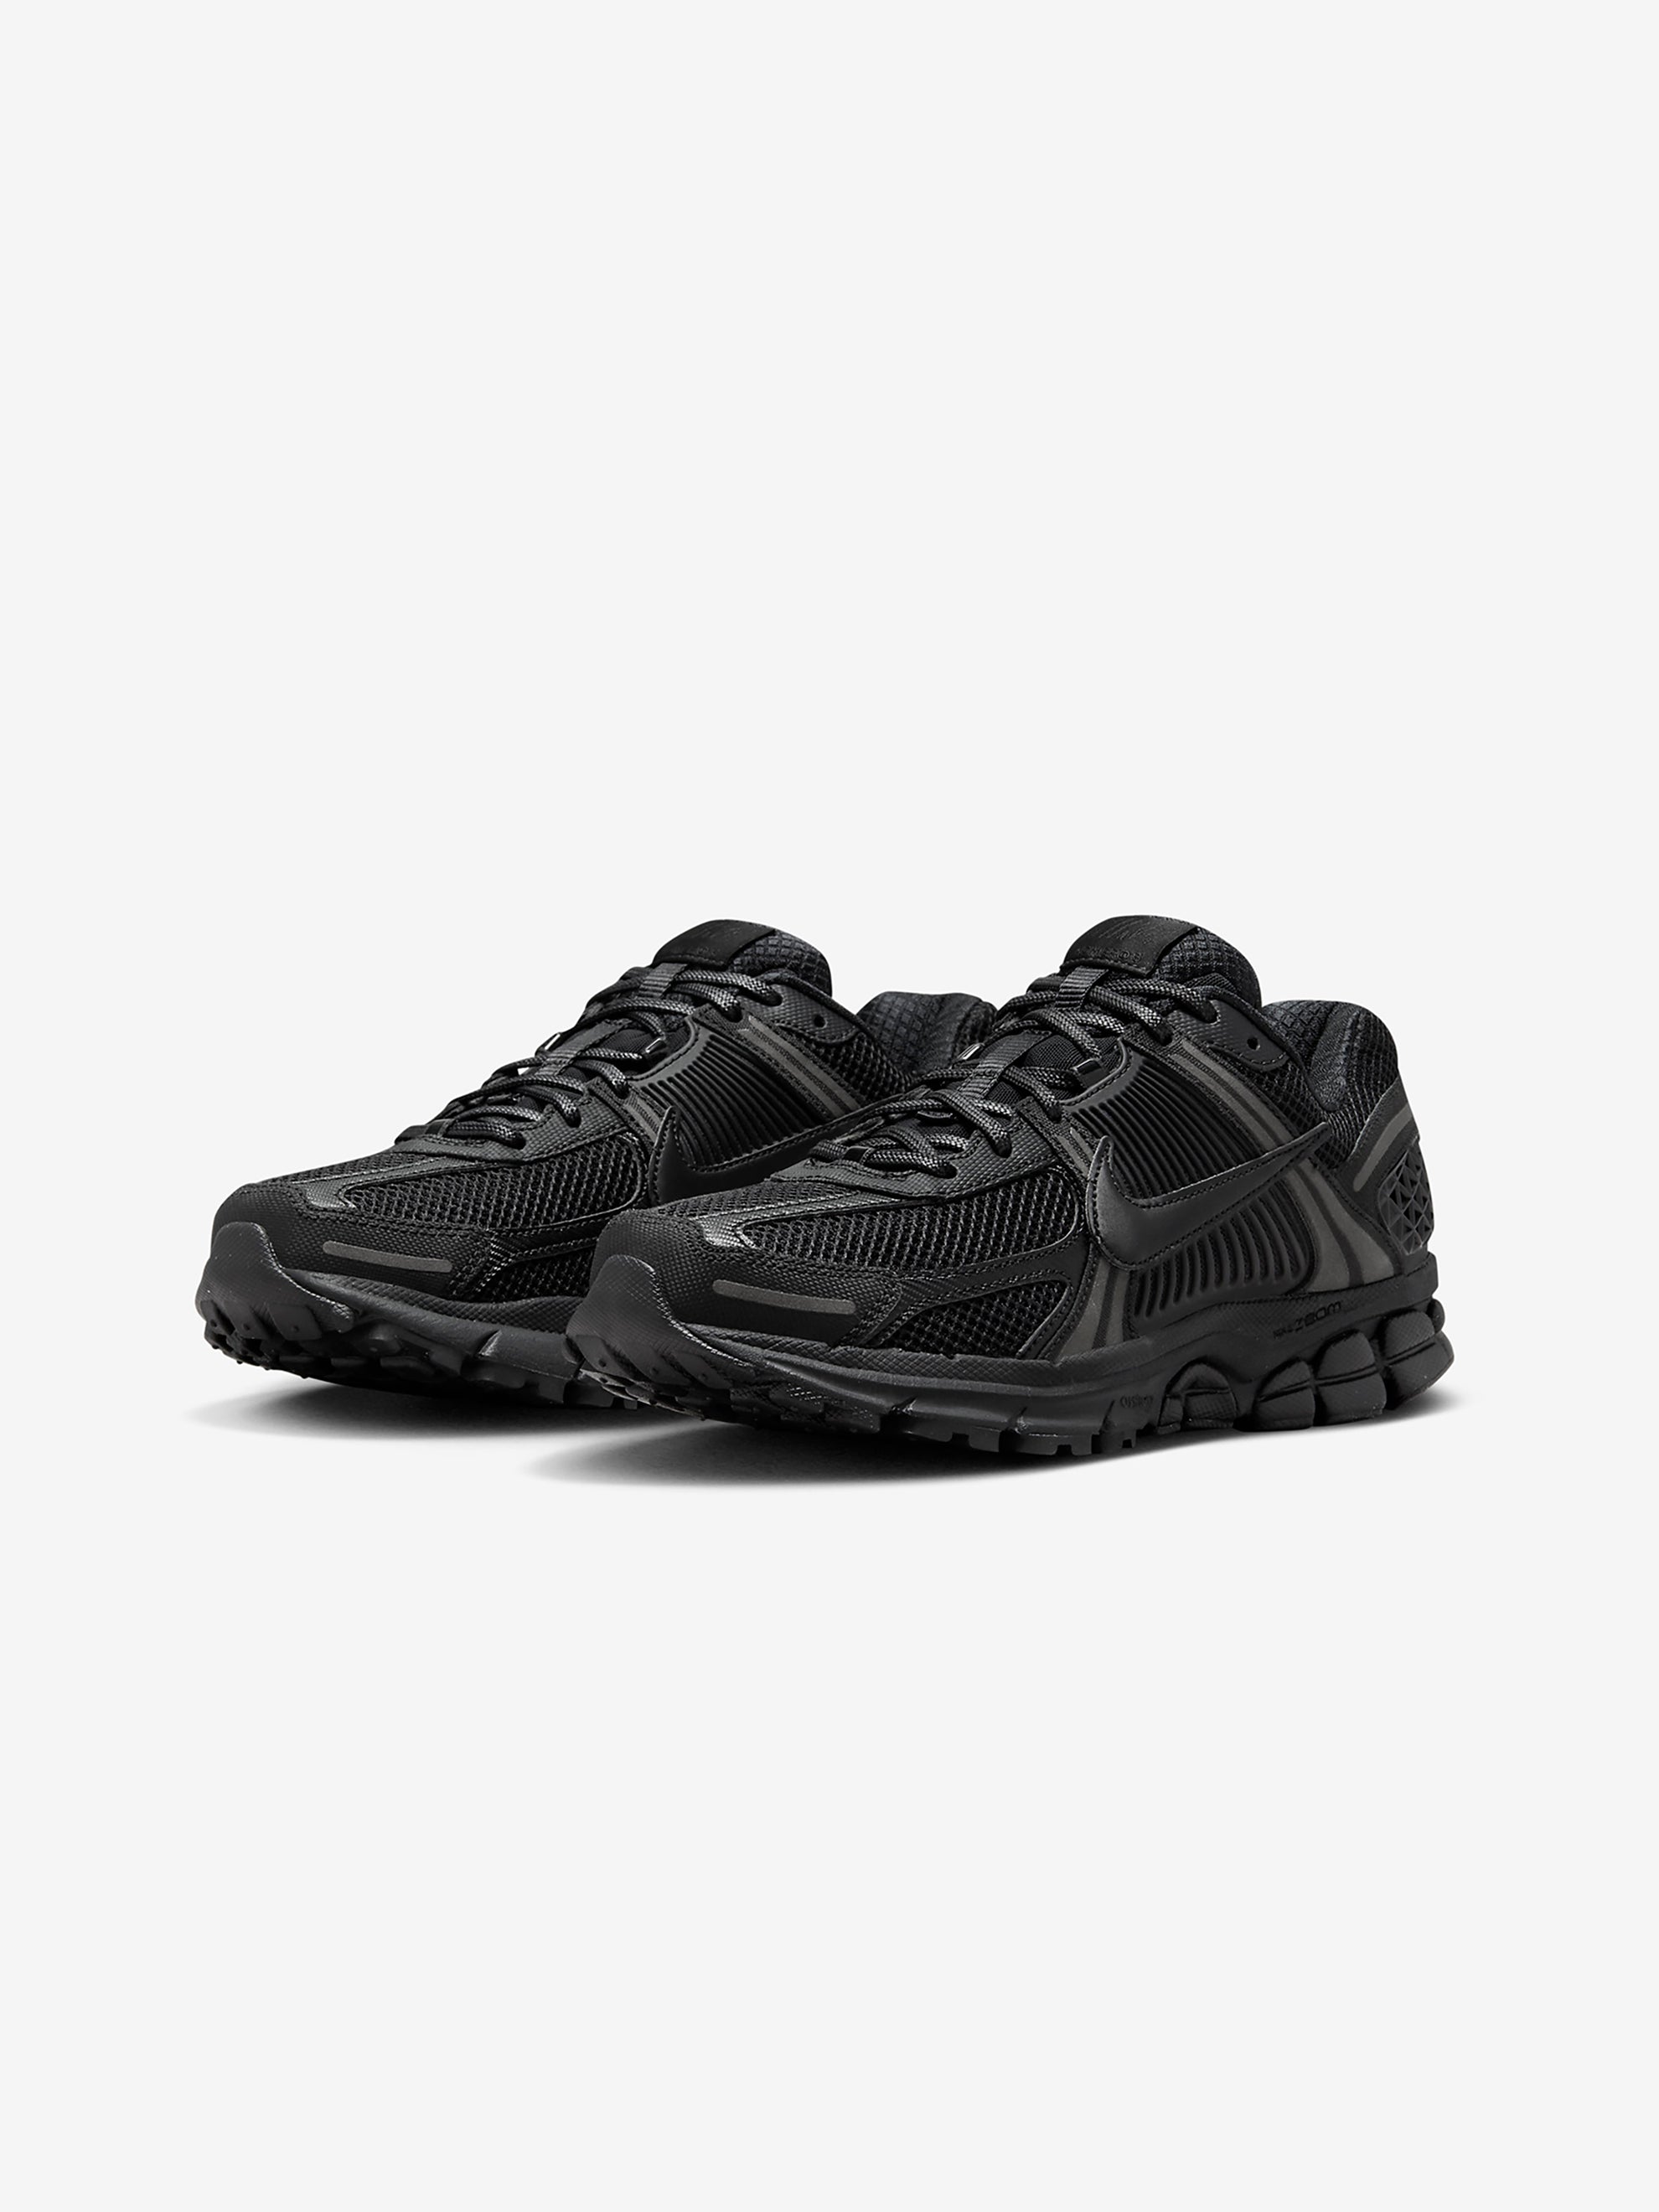 Nike Zoom Vomero 5 Sp (Black/Black-Black)